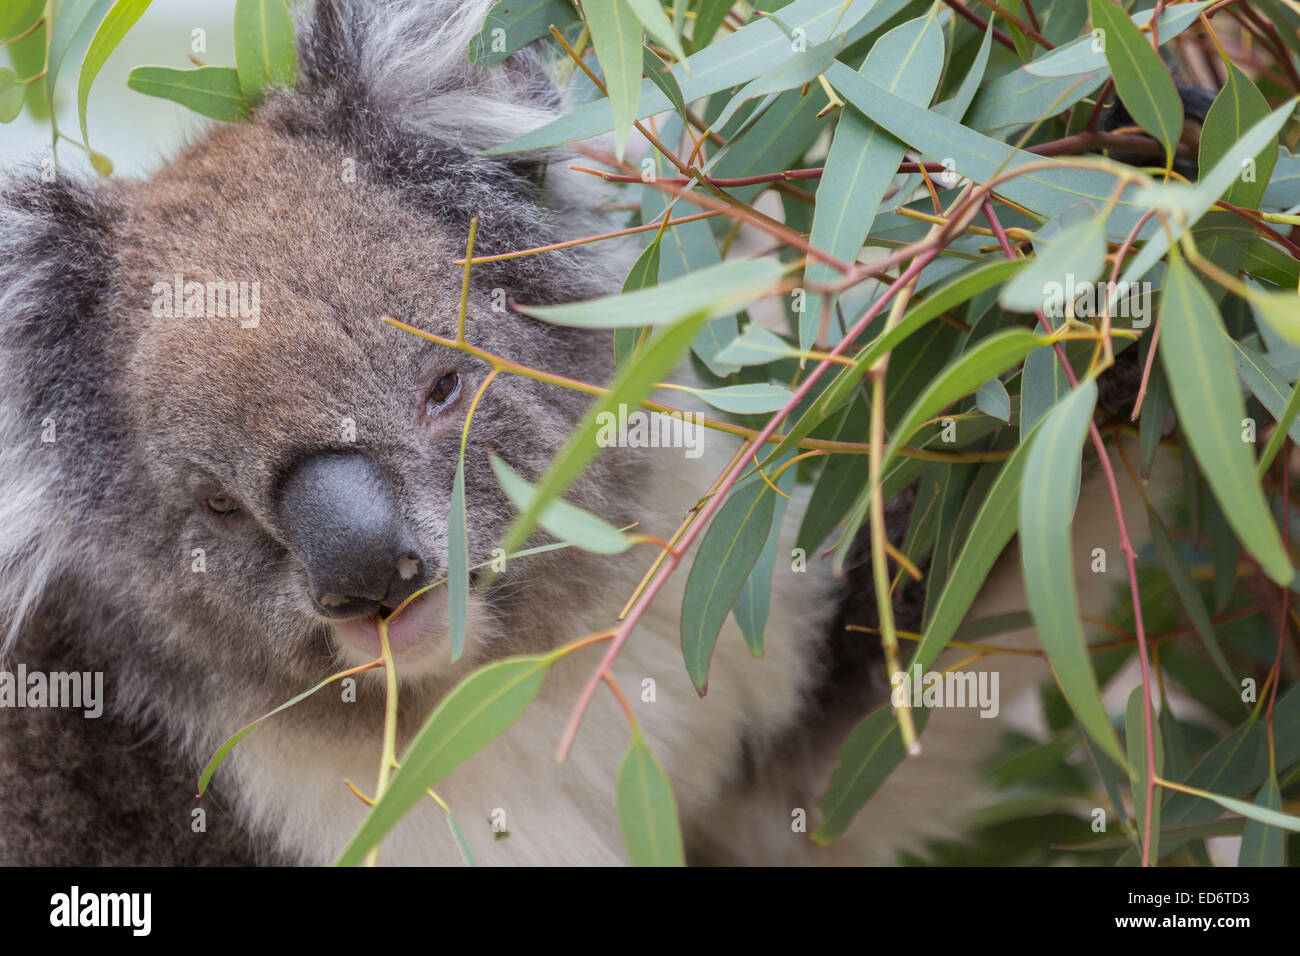 Koala feeding from a gum tree - 1 Stock Photo